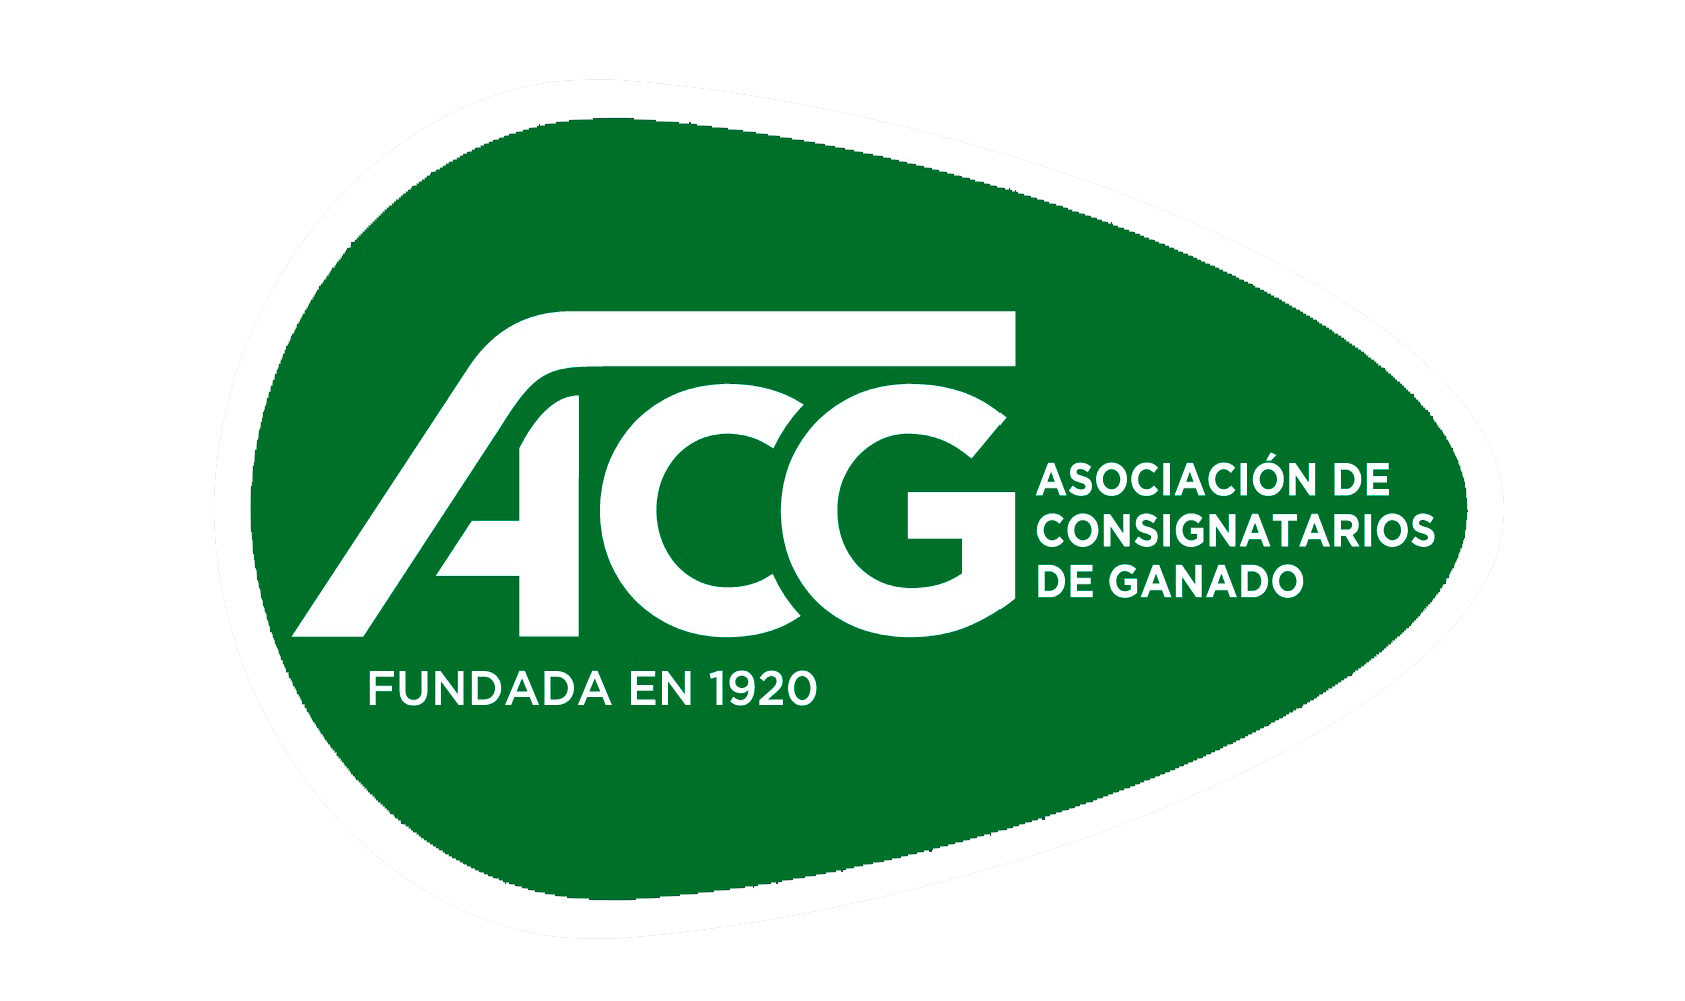 Asociación de consignatarios de ganado del Uruguay